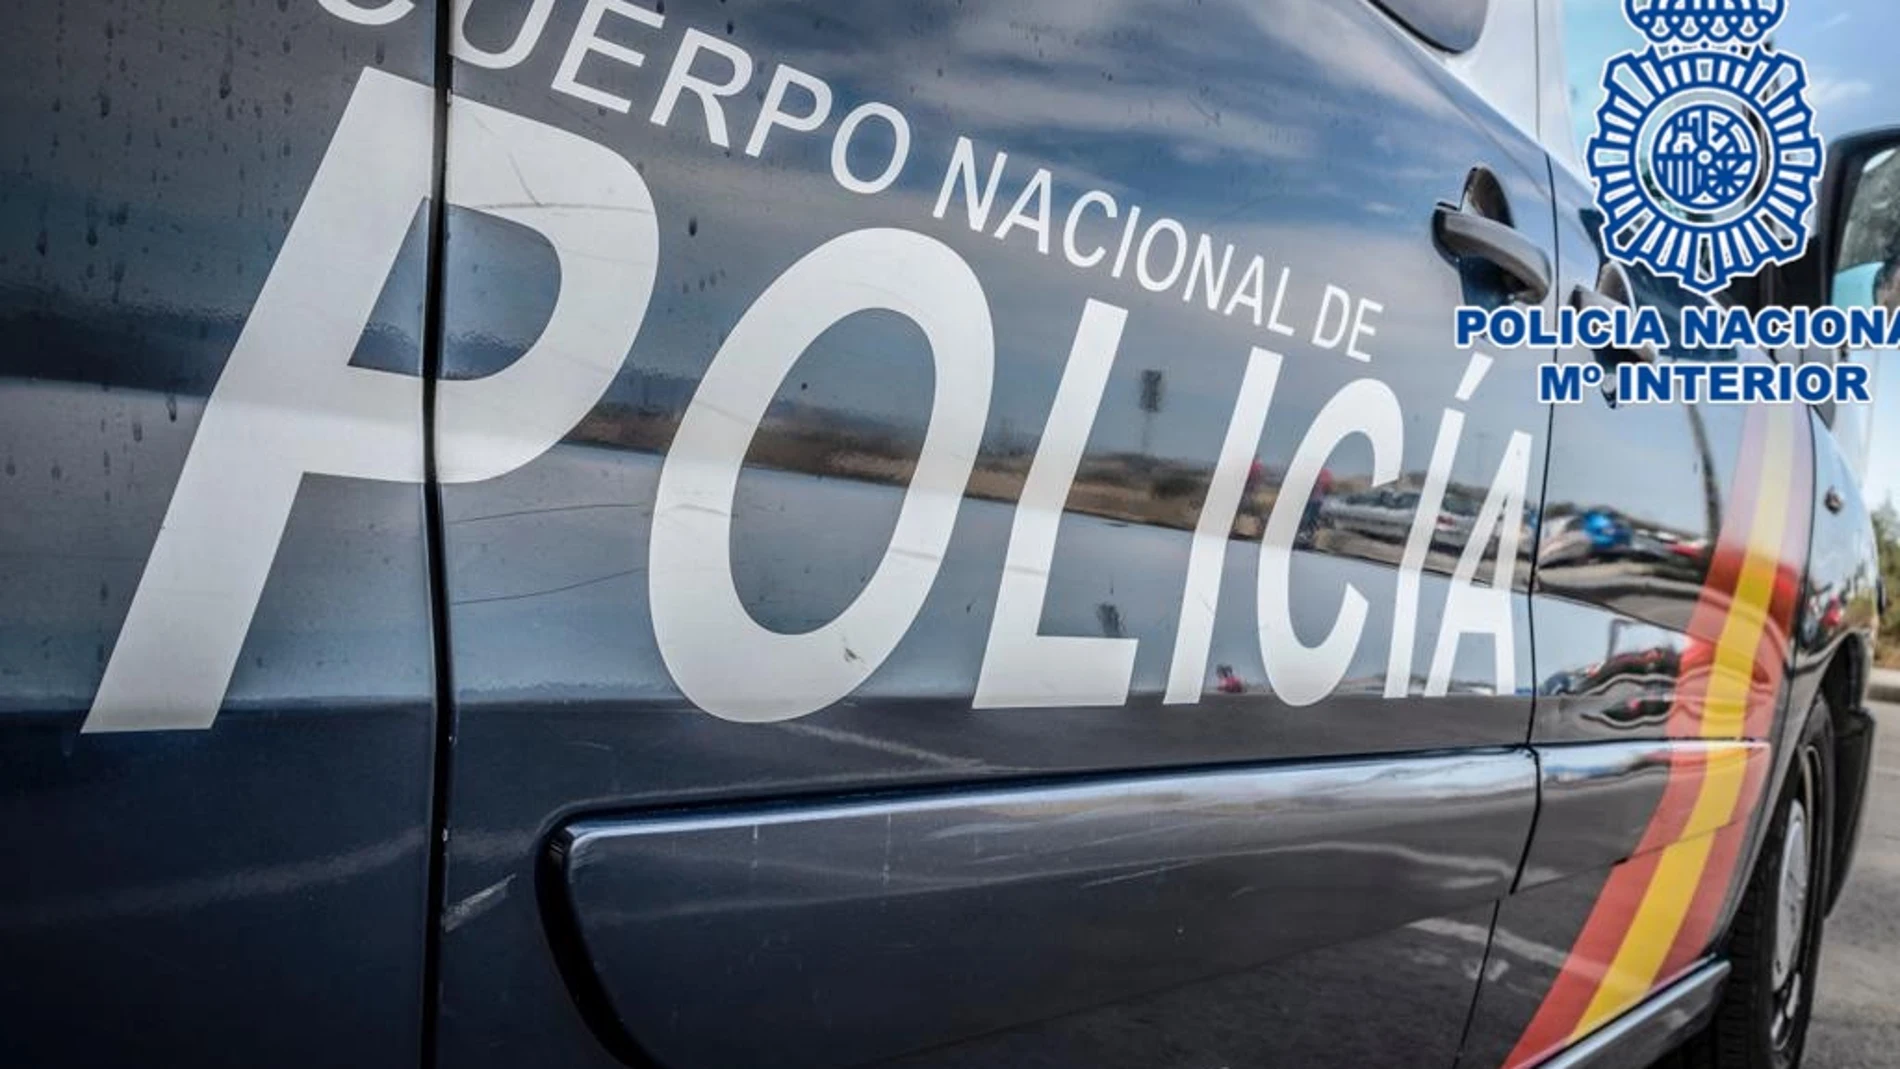 La Policía Nacional detiene a una cuidadora que estafó 18.000 euros a una mujer de avanzada edad - Nota de prensa, audio y fotografía